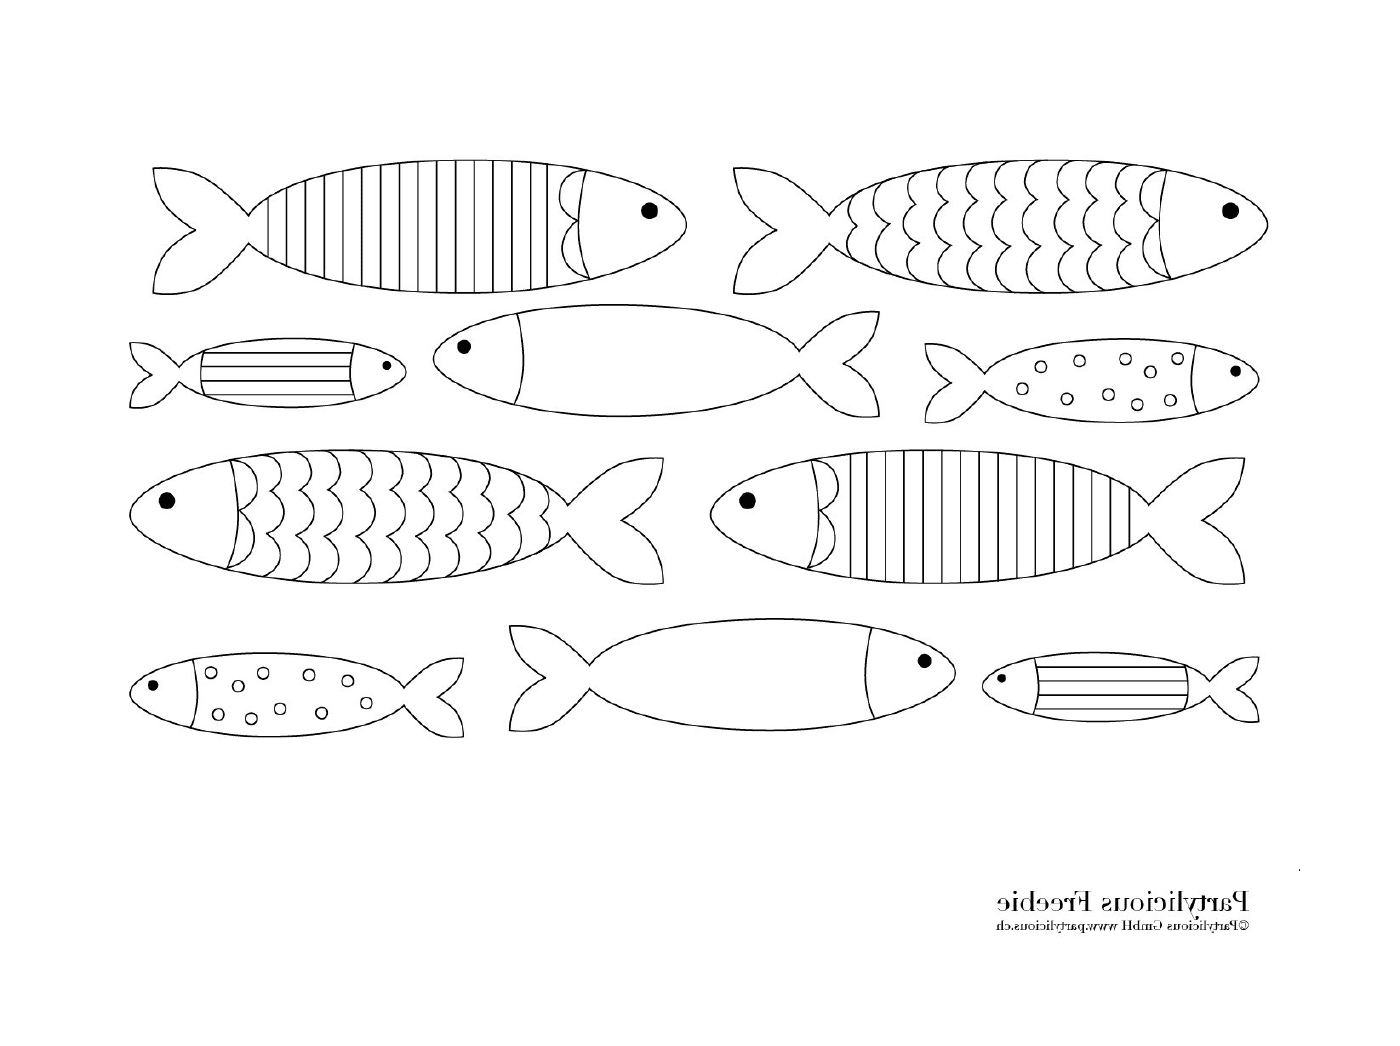  Viele verschiedene Fische auf der Seite 